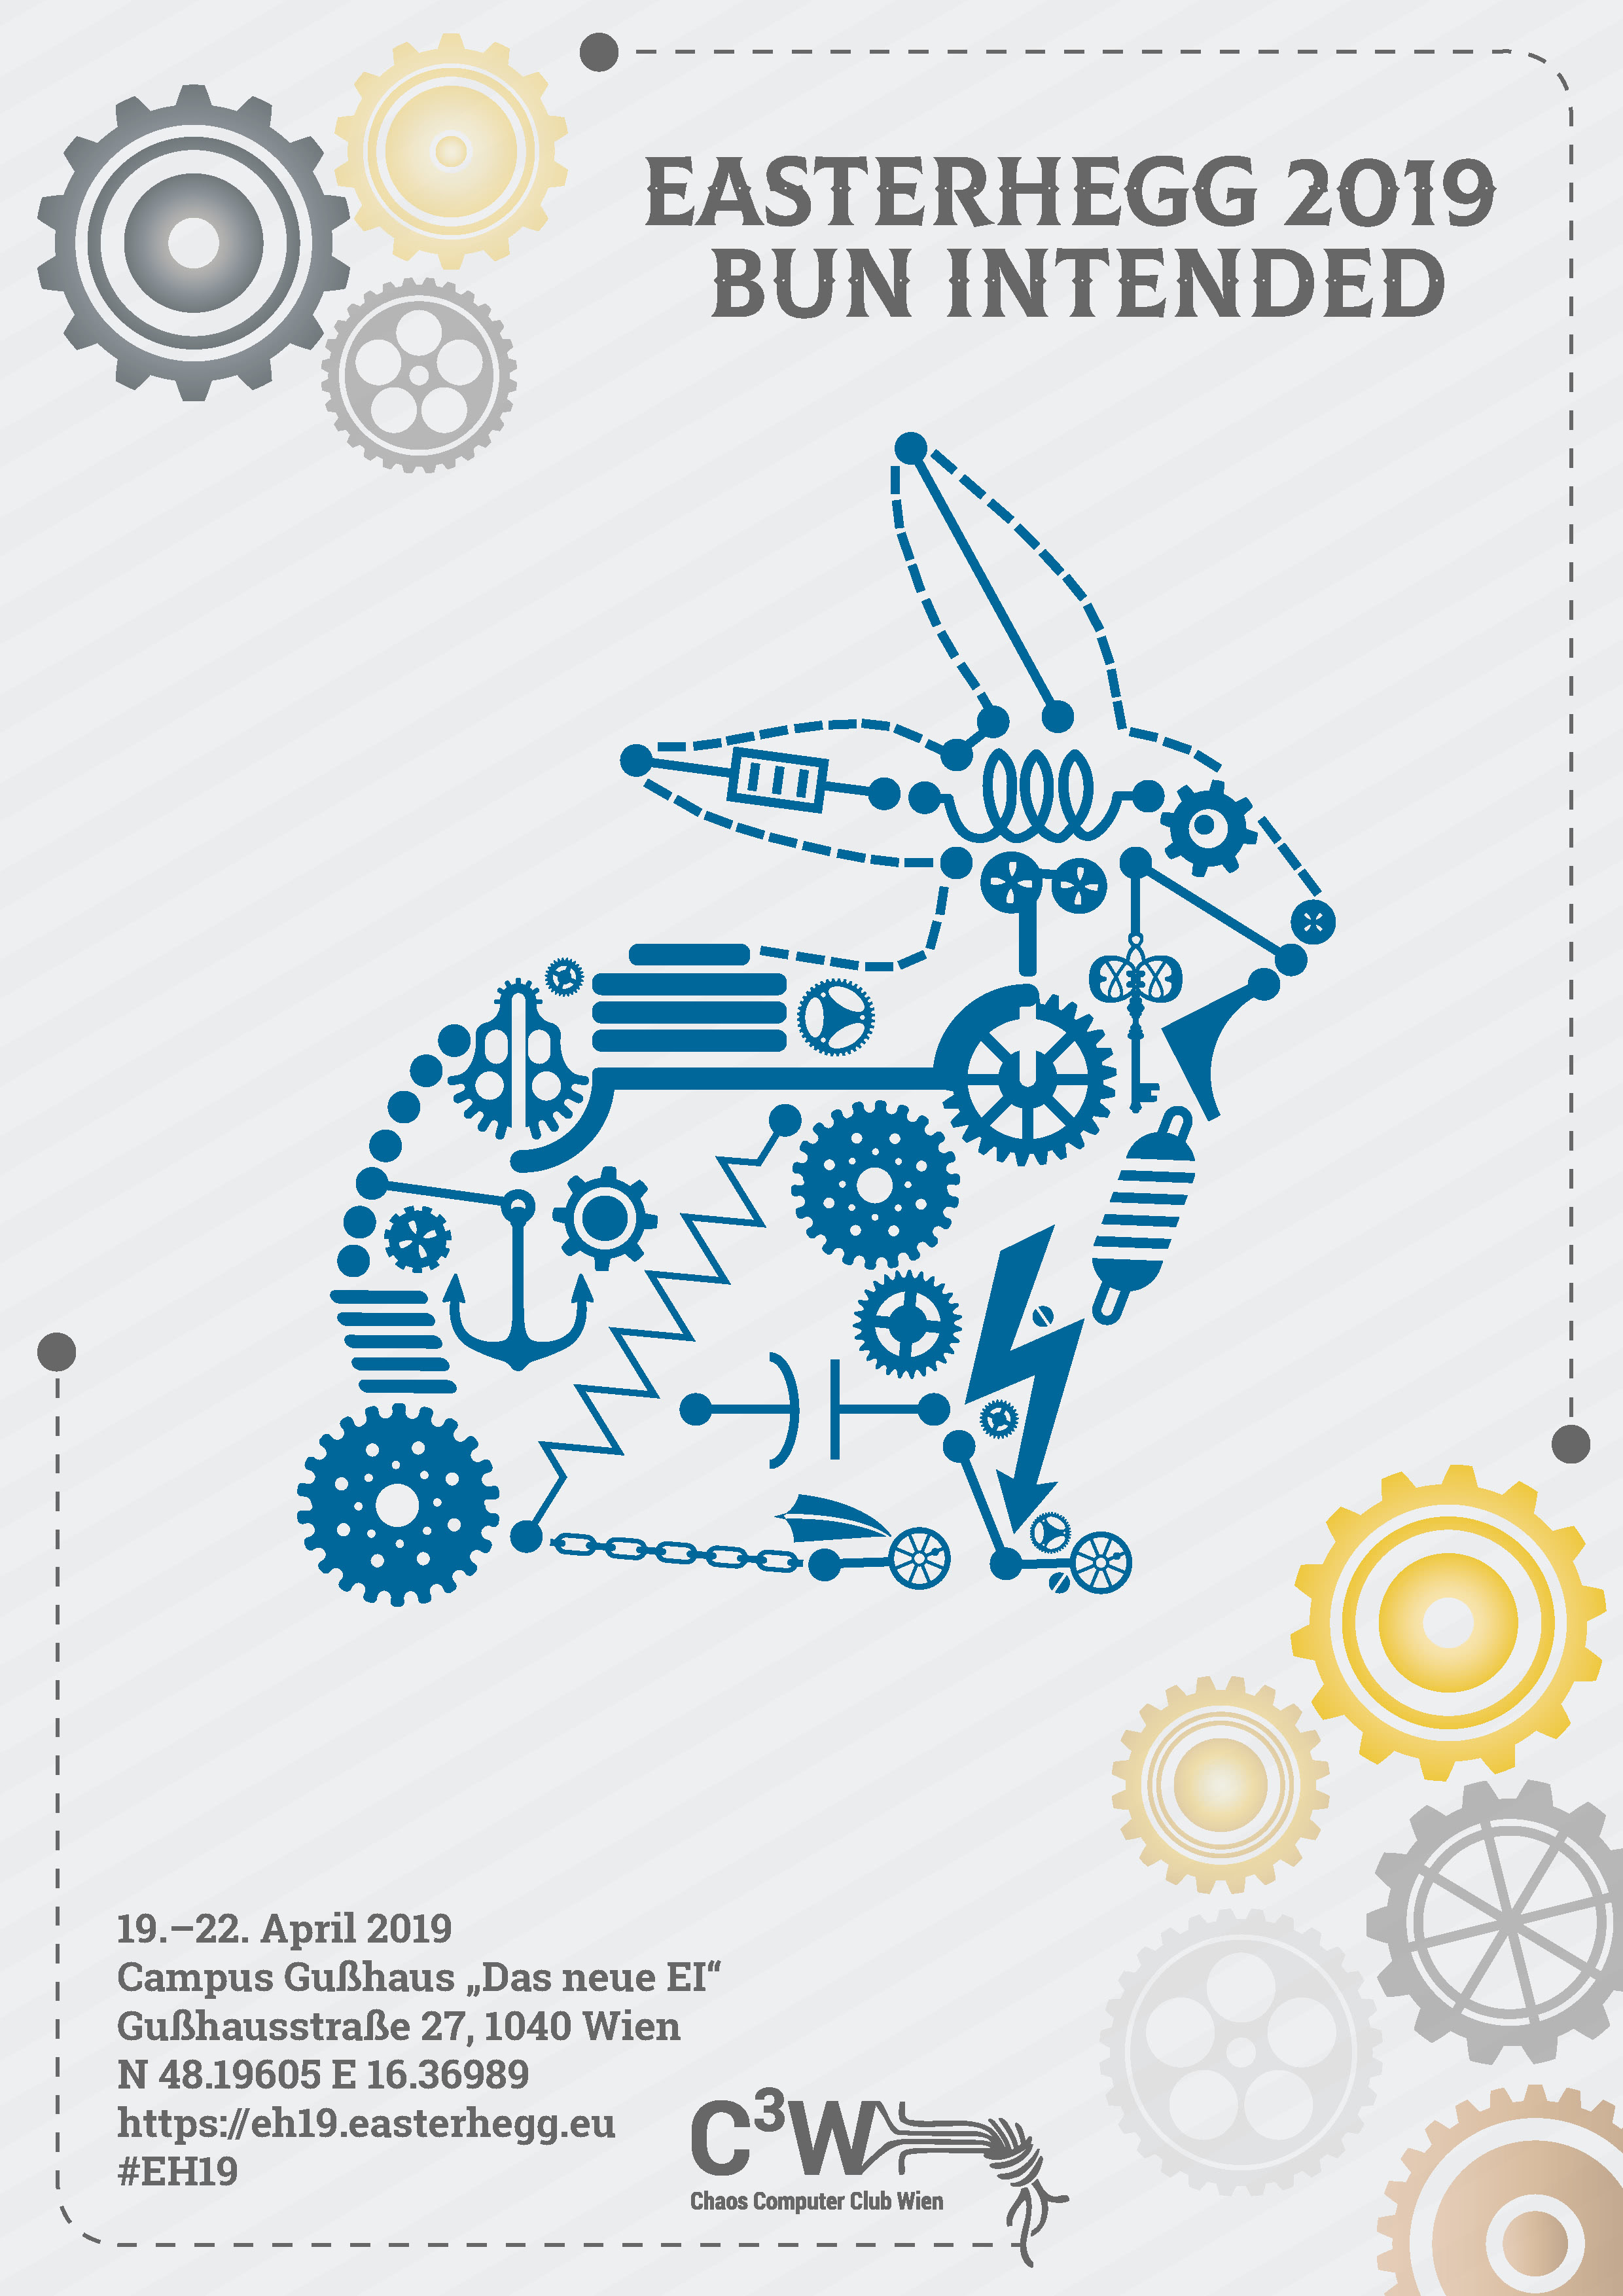 Easterhegg 2019 Event Poster